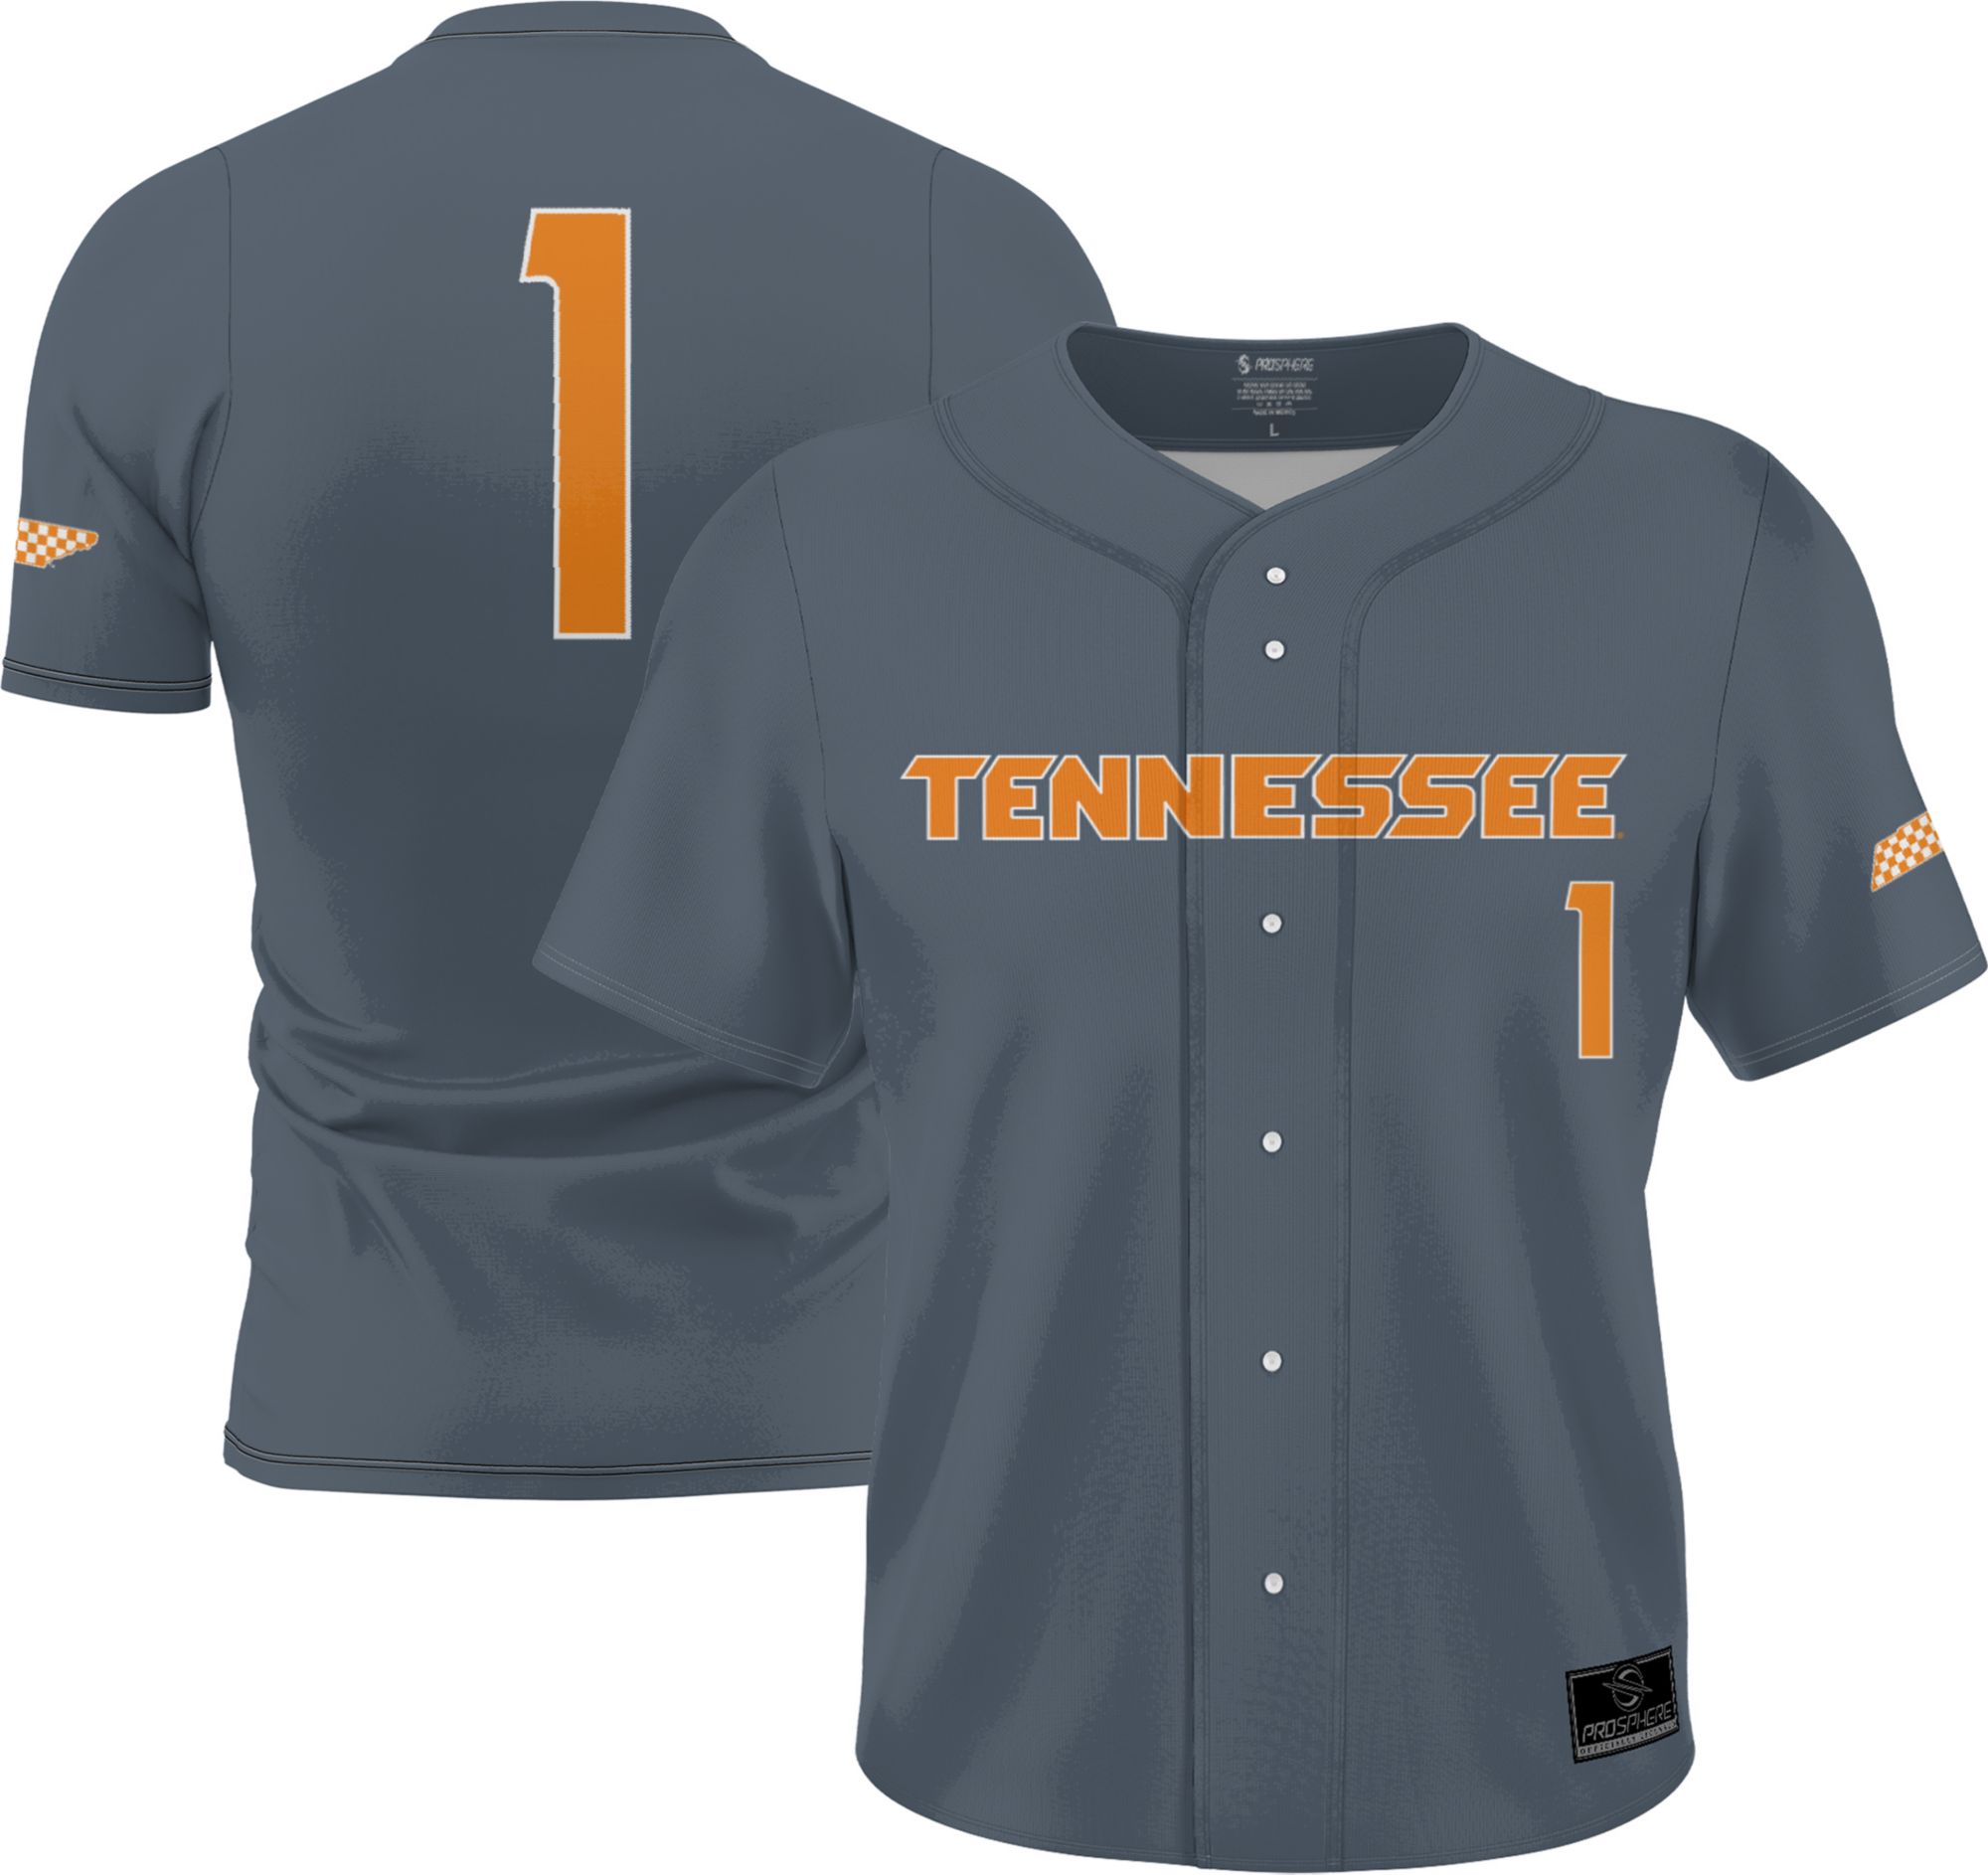 Tennessee Volunteers lacrosse jersey